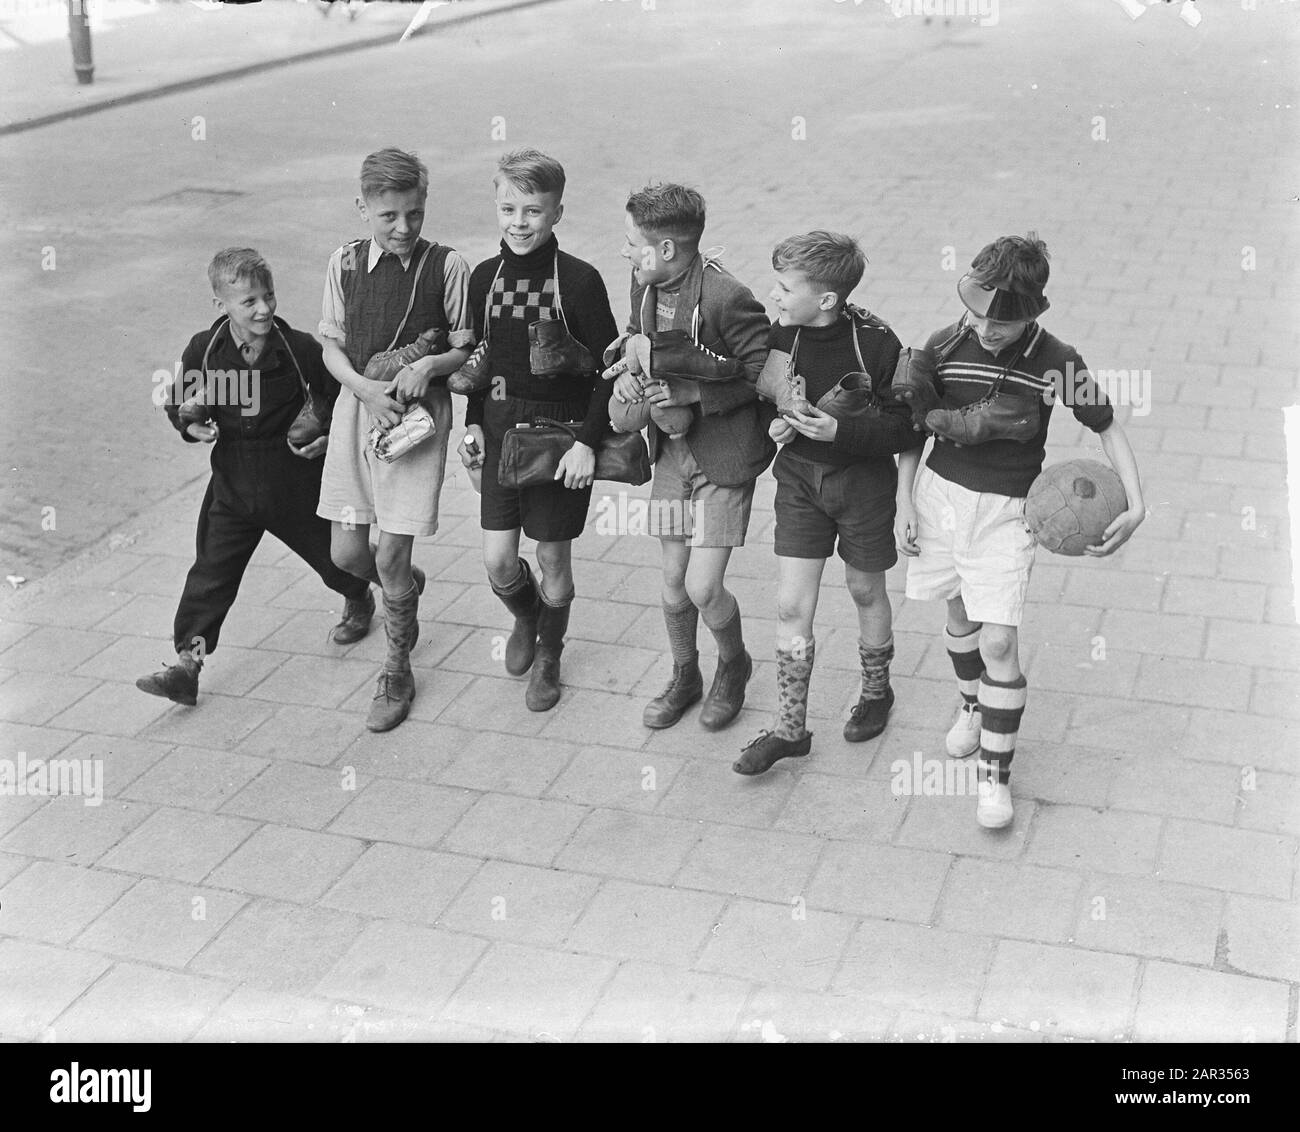 Les garçons de football scolaire sur le terrain Date : 7 avril 1950 mots clés : garçons, football scolaire, sport, terrain Banque D'Images